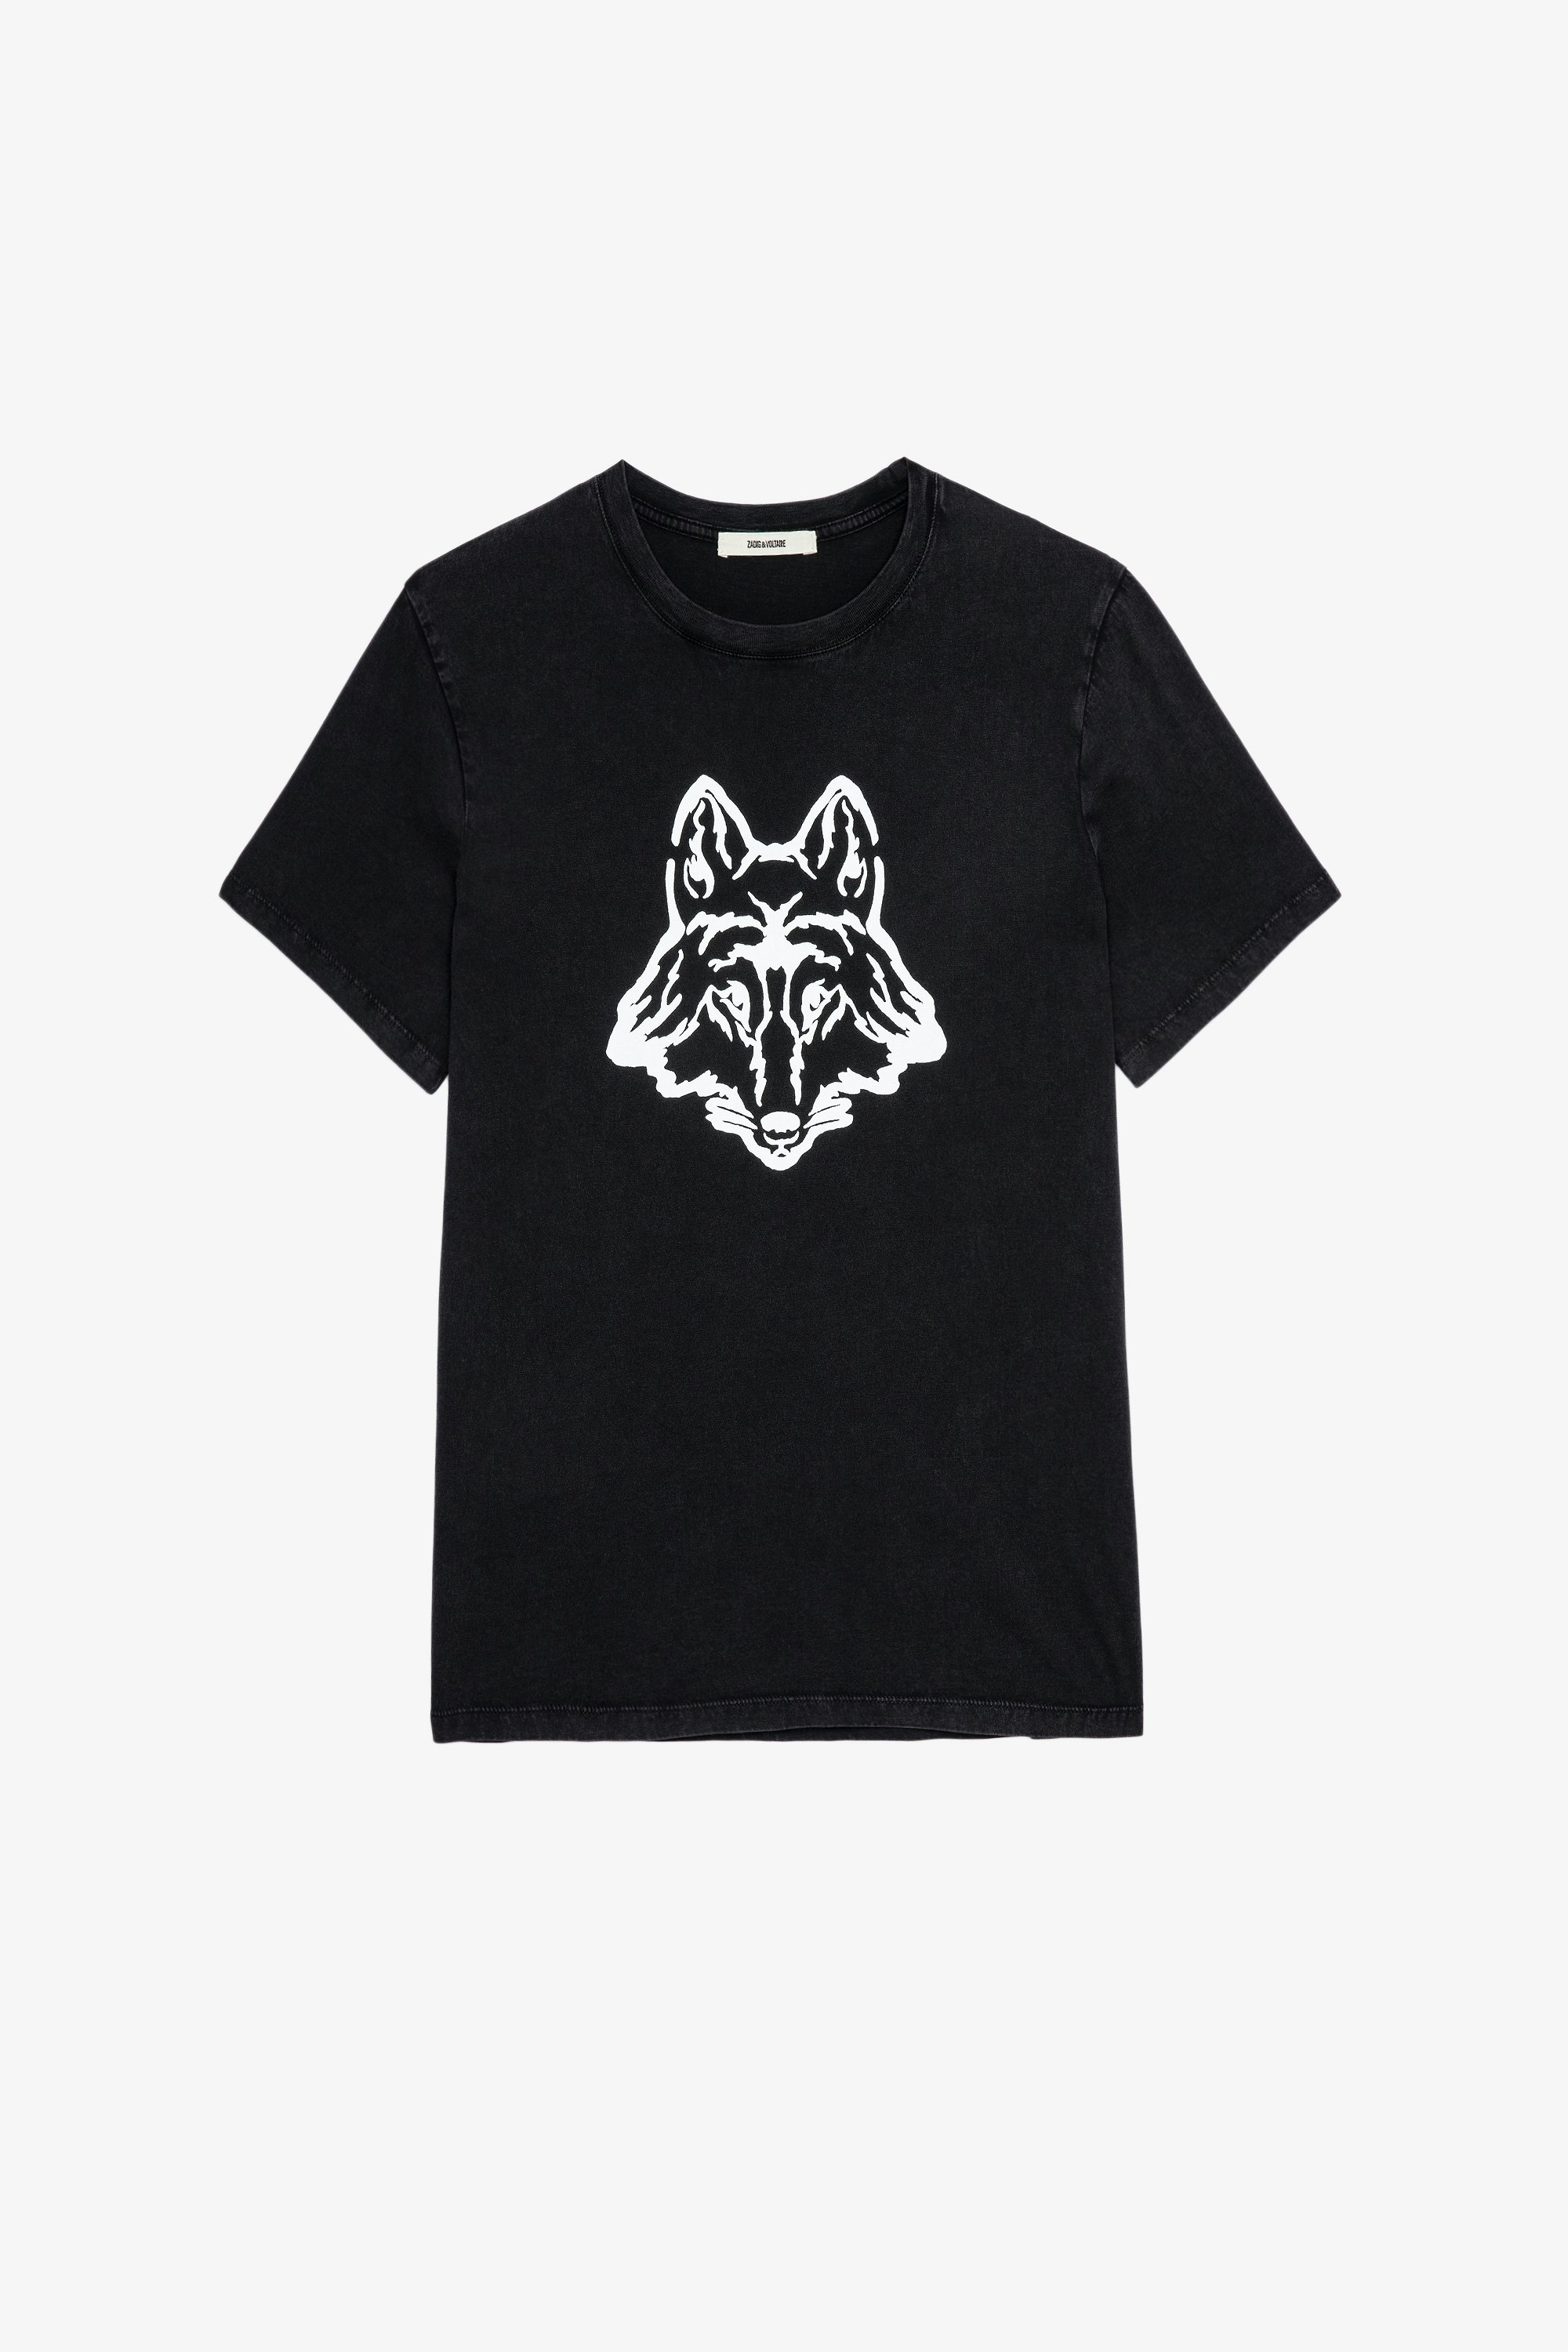 T-Shirt Tommy Herren-T-Shirt aus schwarzer Baumwolle mit Wolfaufdruck